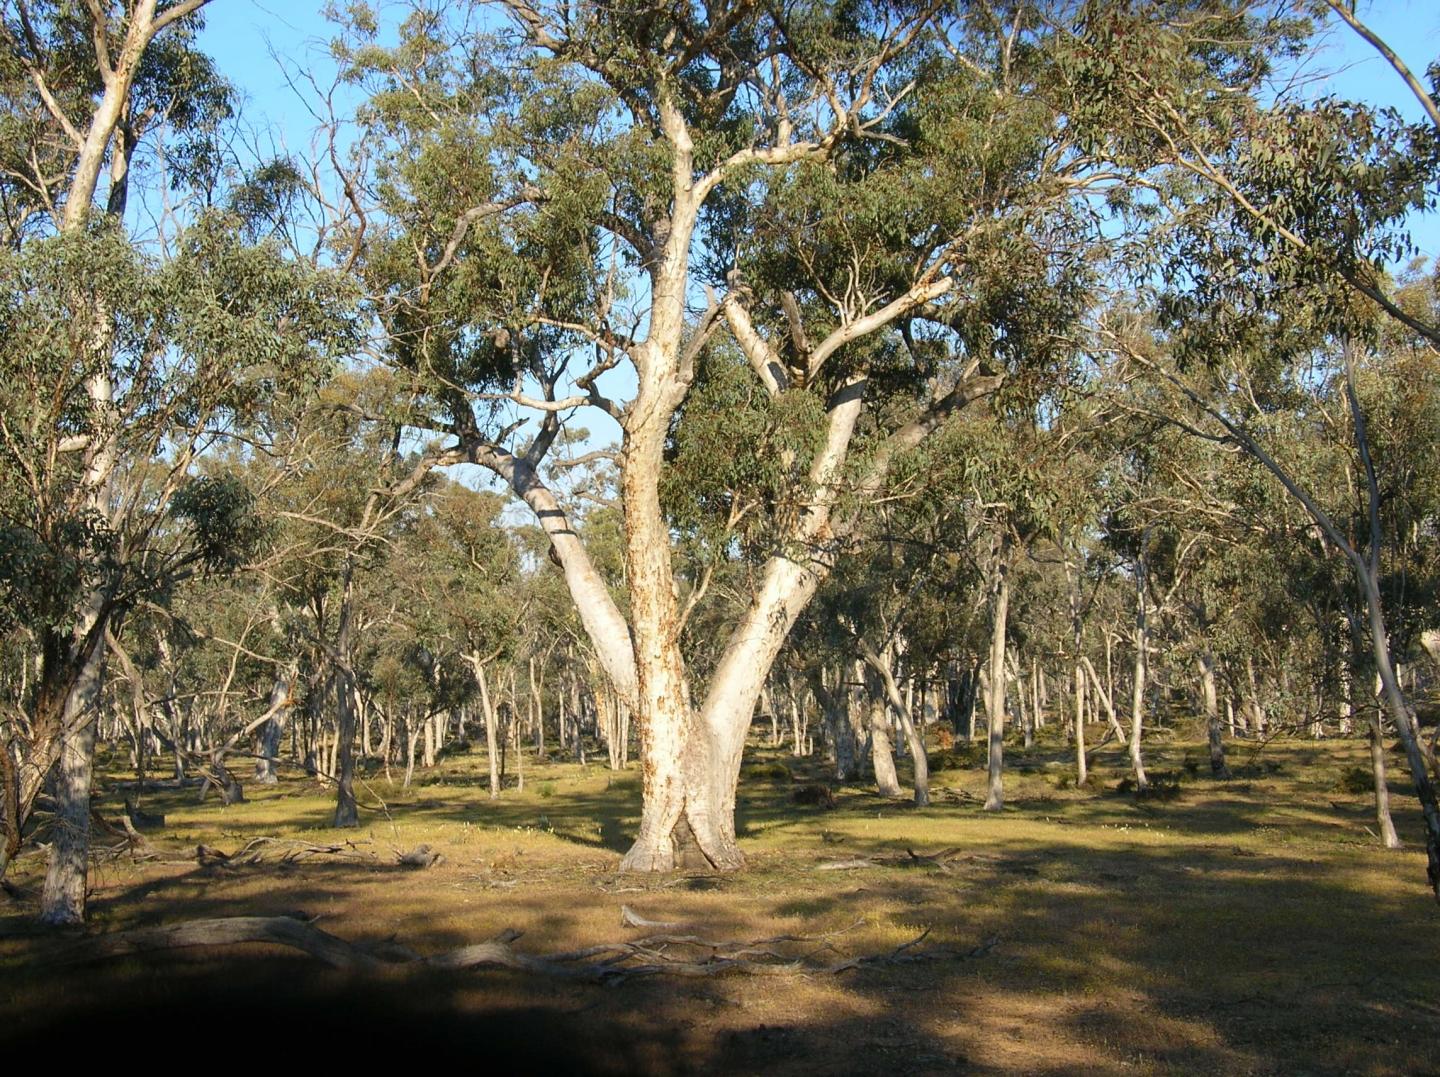 Eucalyptus wandoo trees